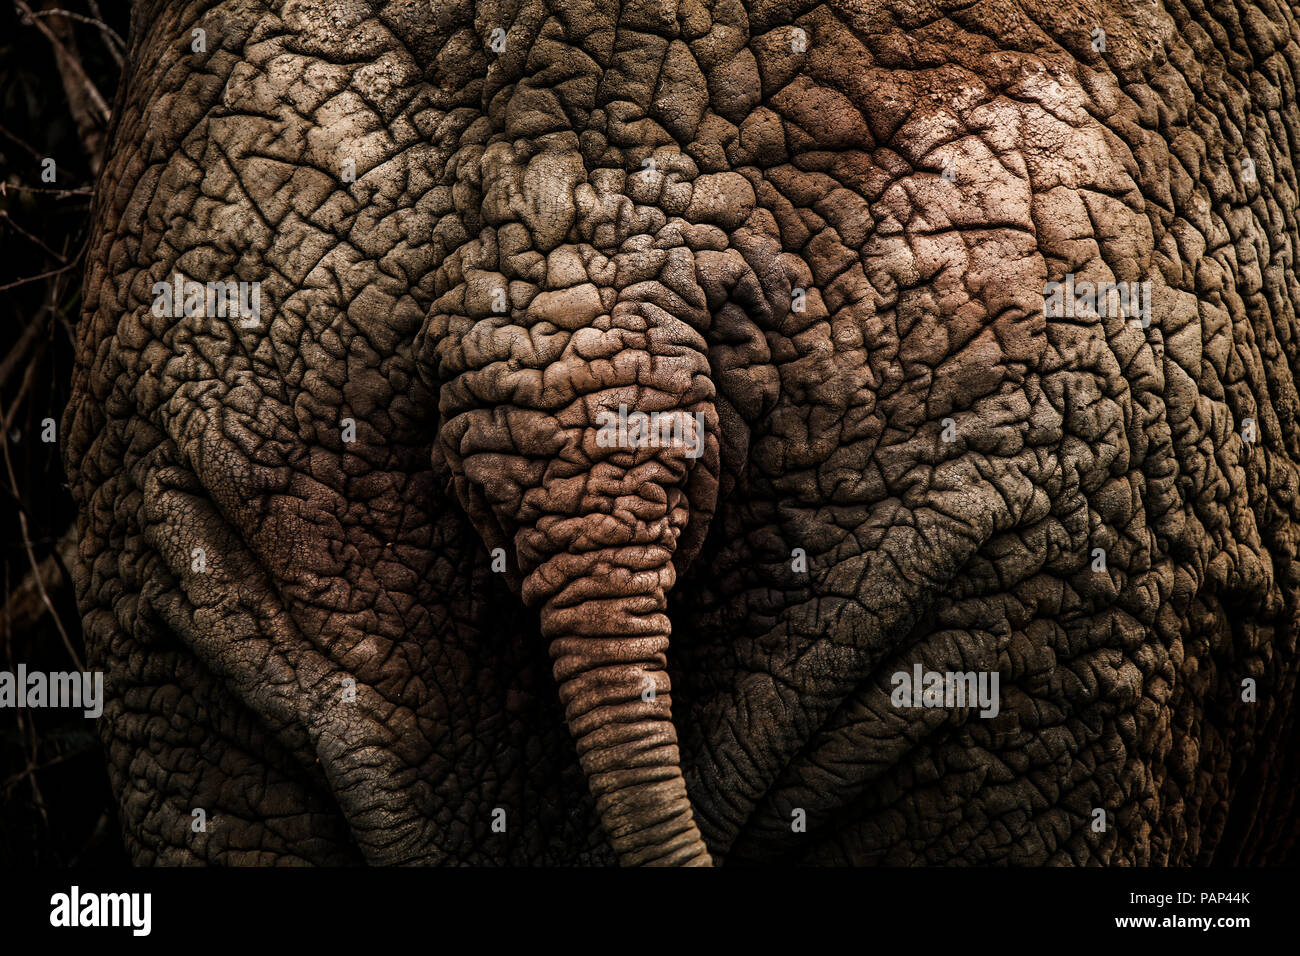 L'Ouganda, l'éléphant africain, la vue arrière, close-up Banque D'Images